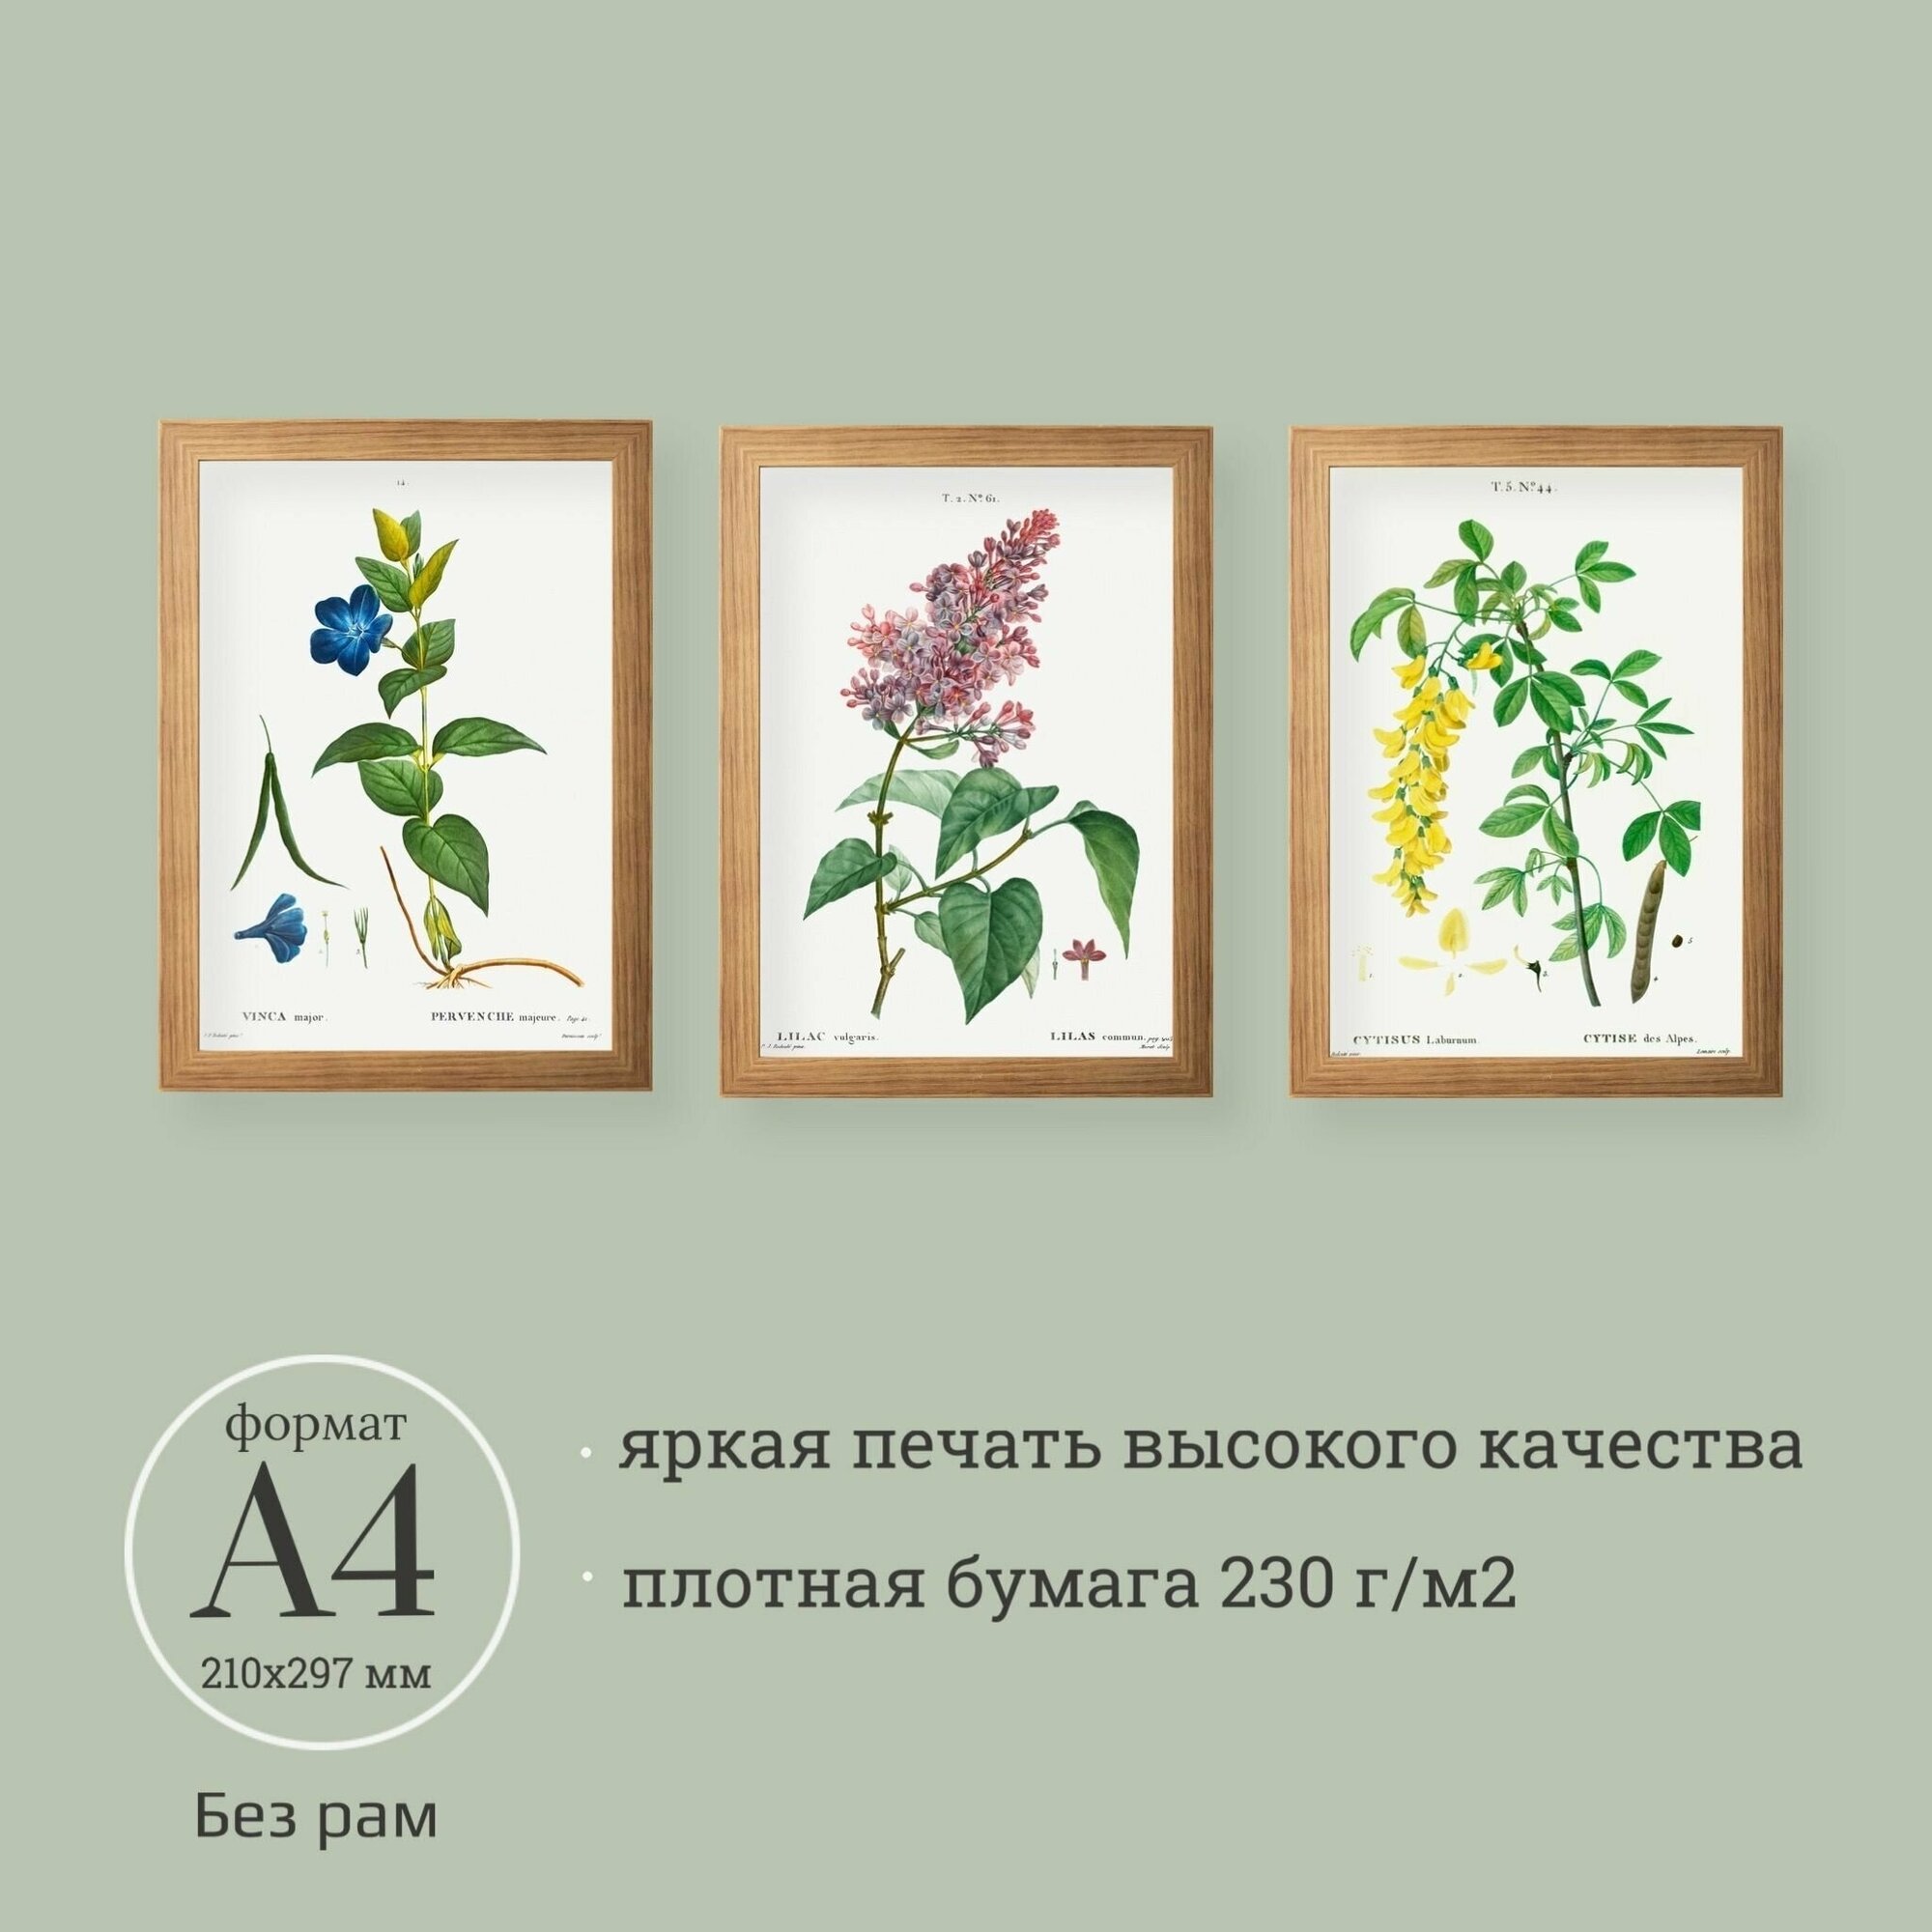 Постеры с винтажными ботаническими иллюстрациями 3 шт. А4